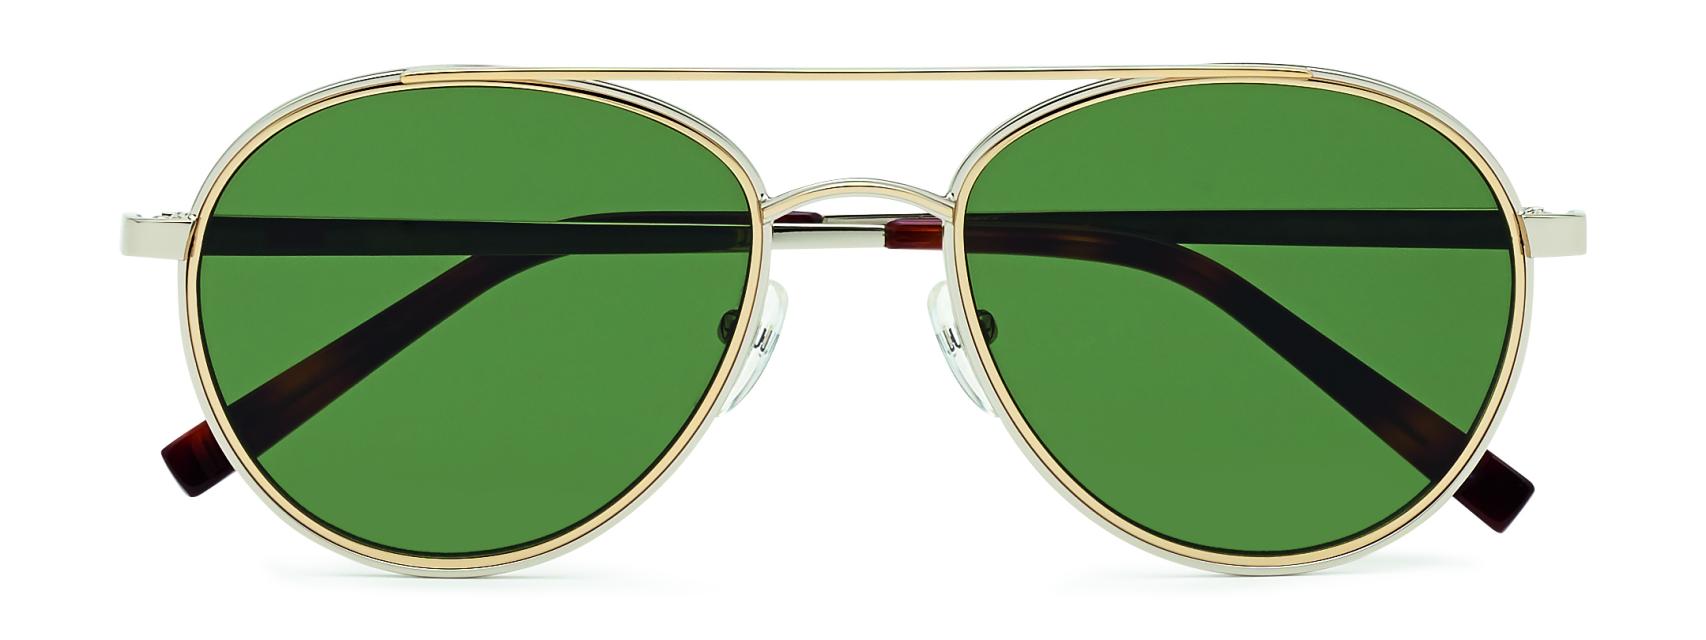 Destello web Minero Esta es la nueva colección de gafas de sol dedicada al hombre contemporáneo